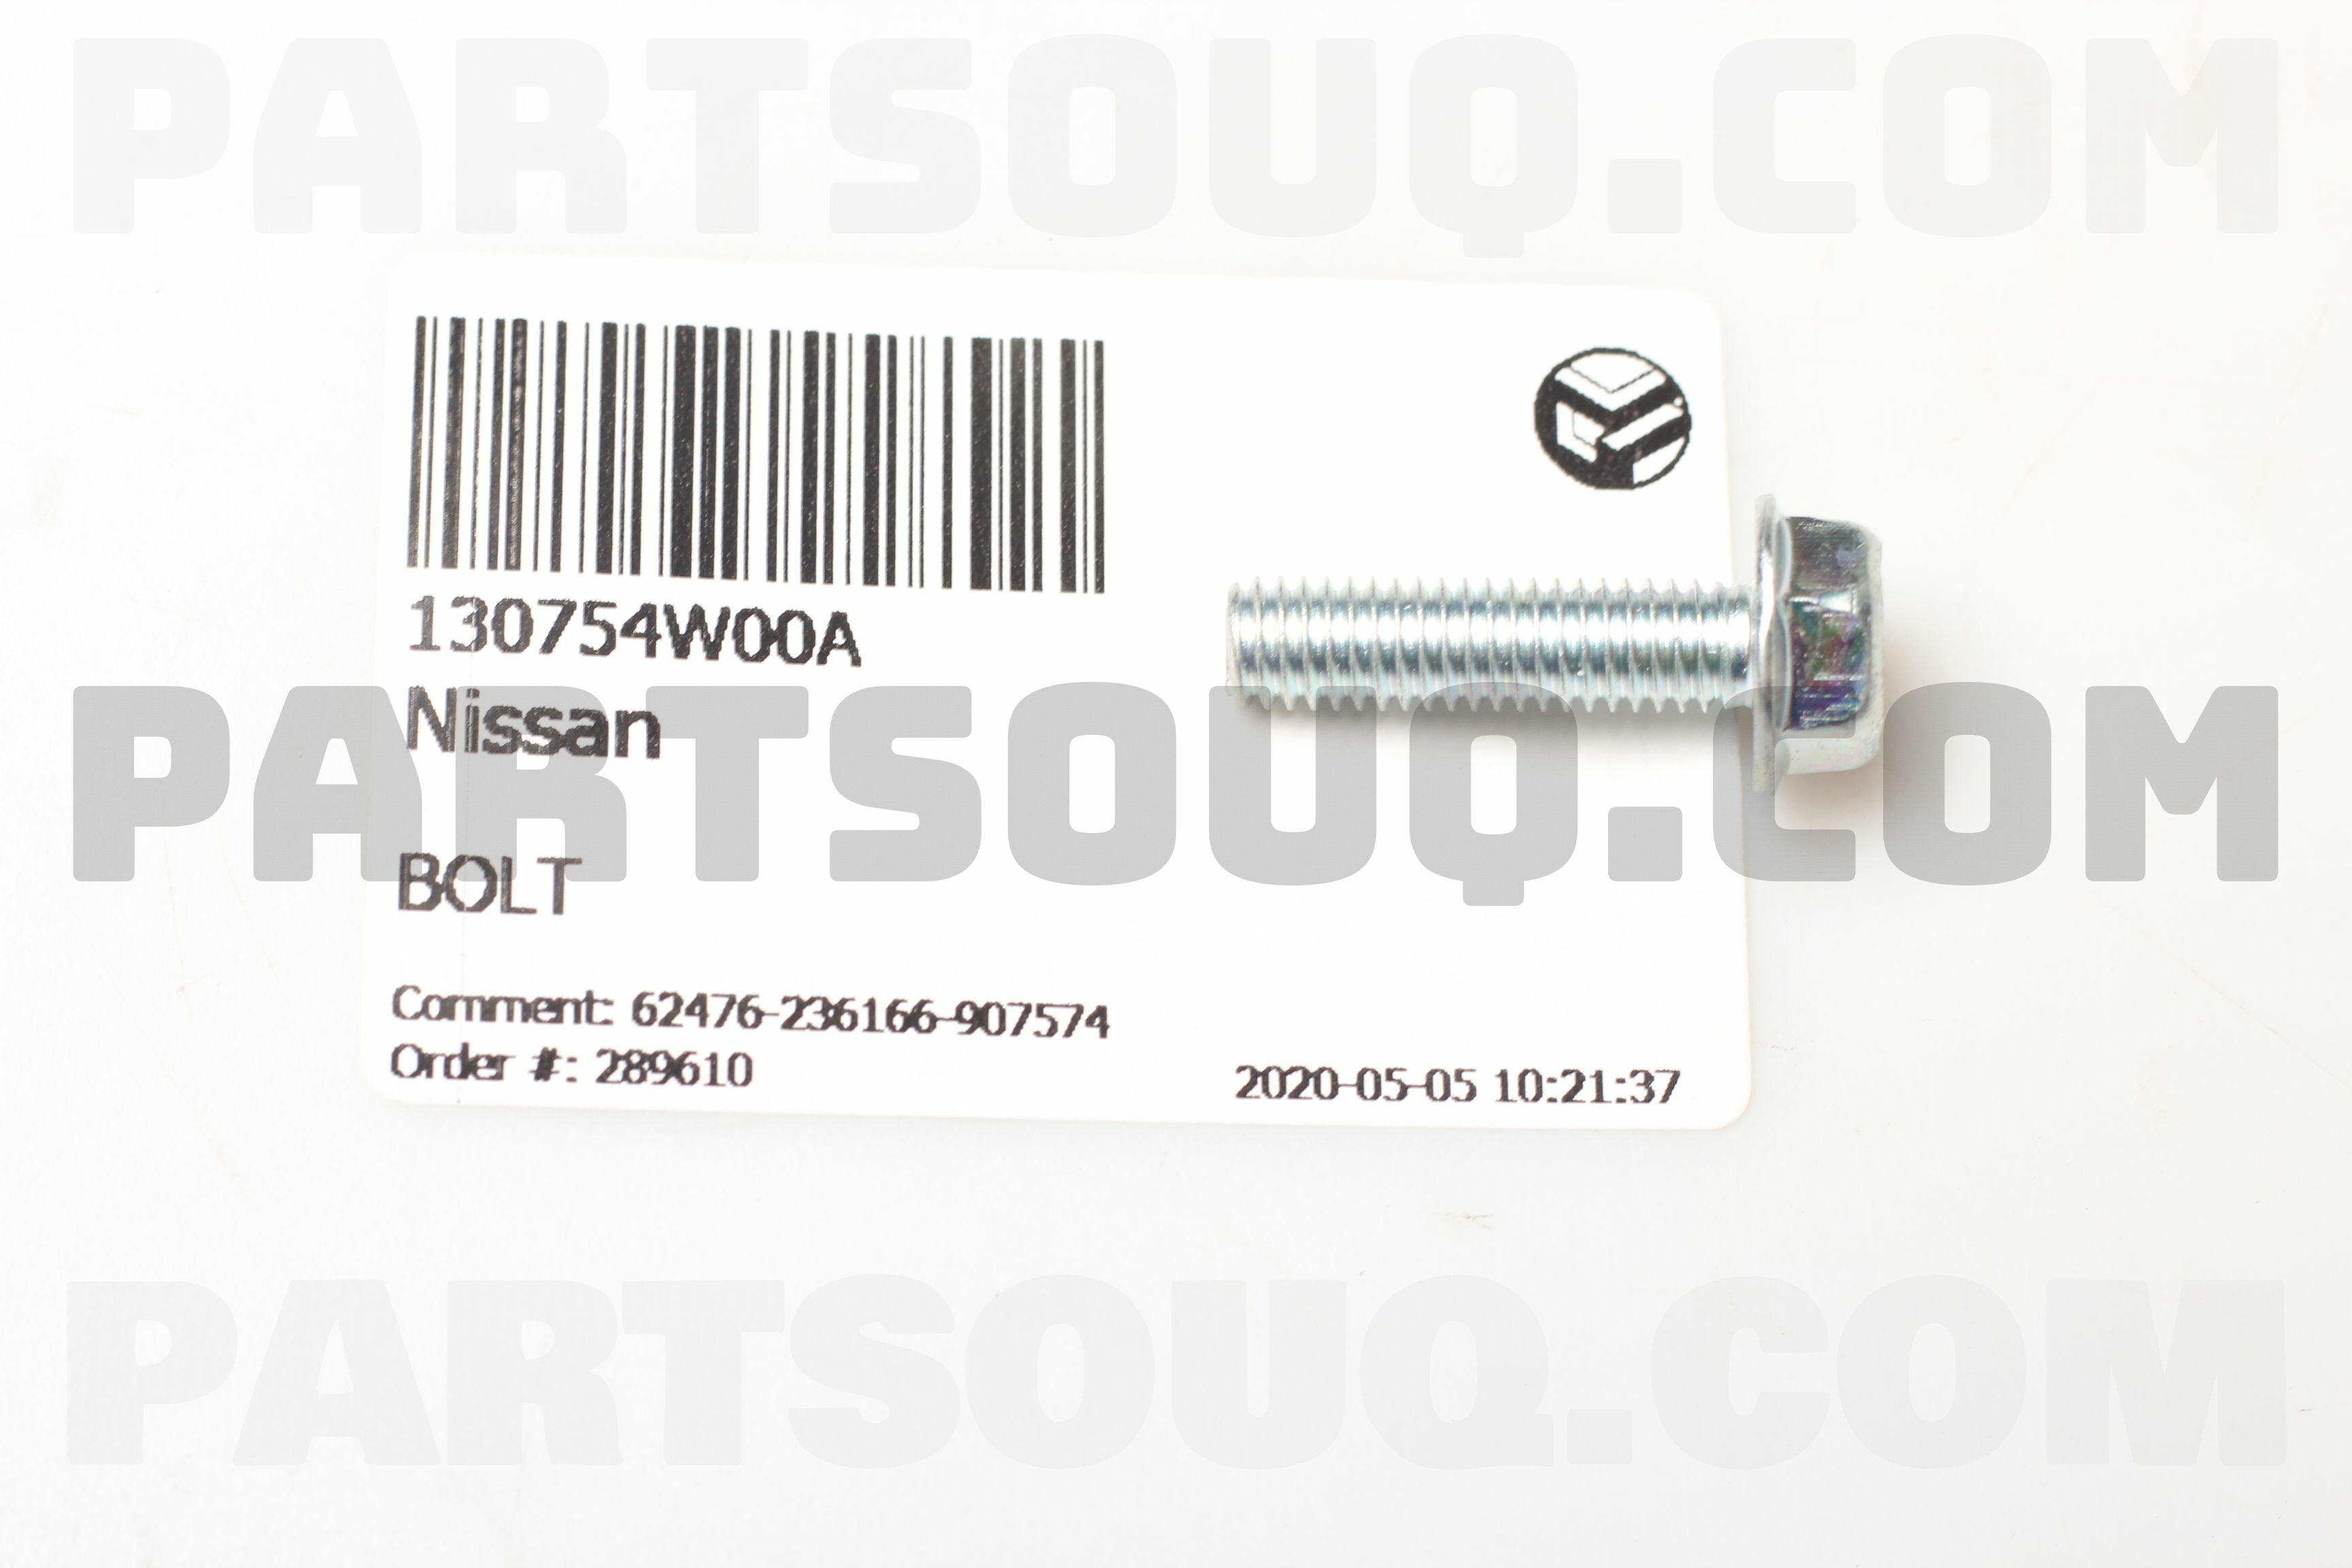 BOLT 130754W000 | Nissan Parts | PartSouq